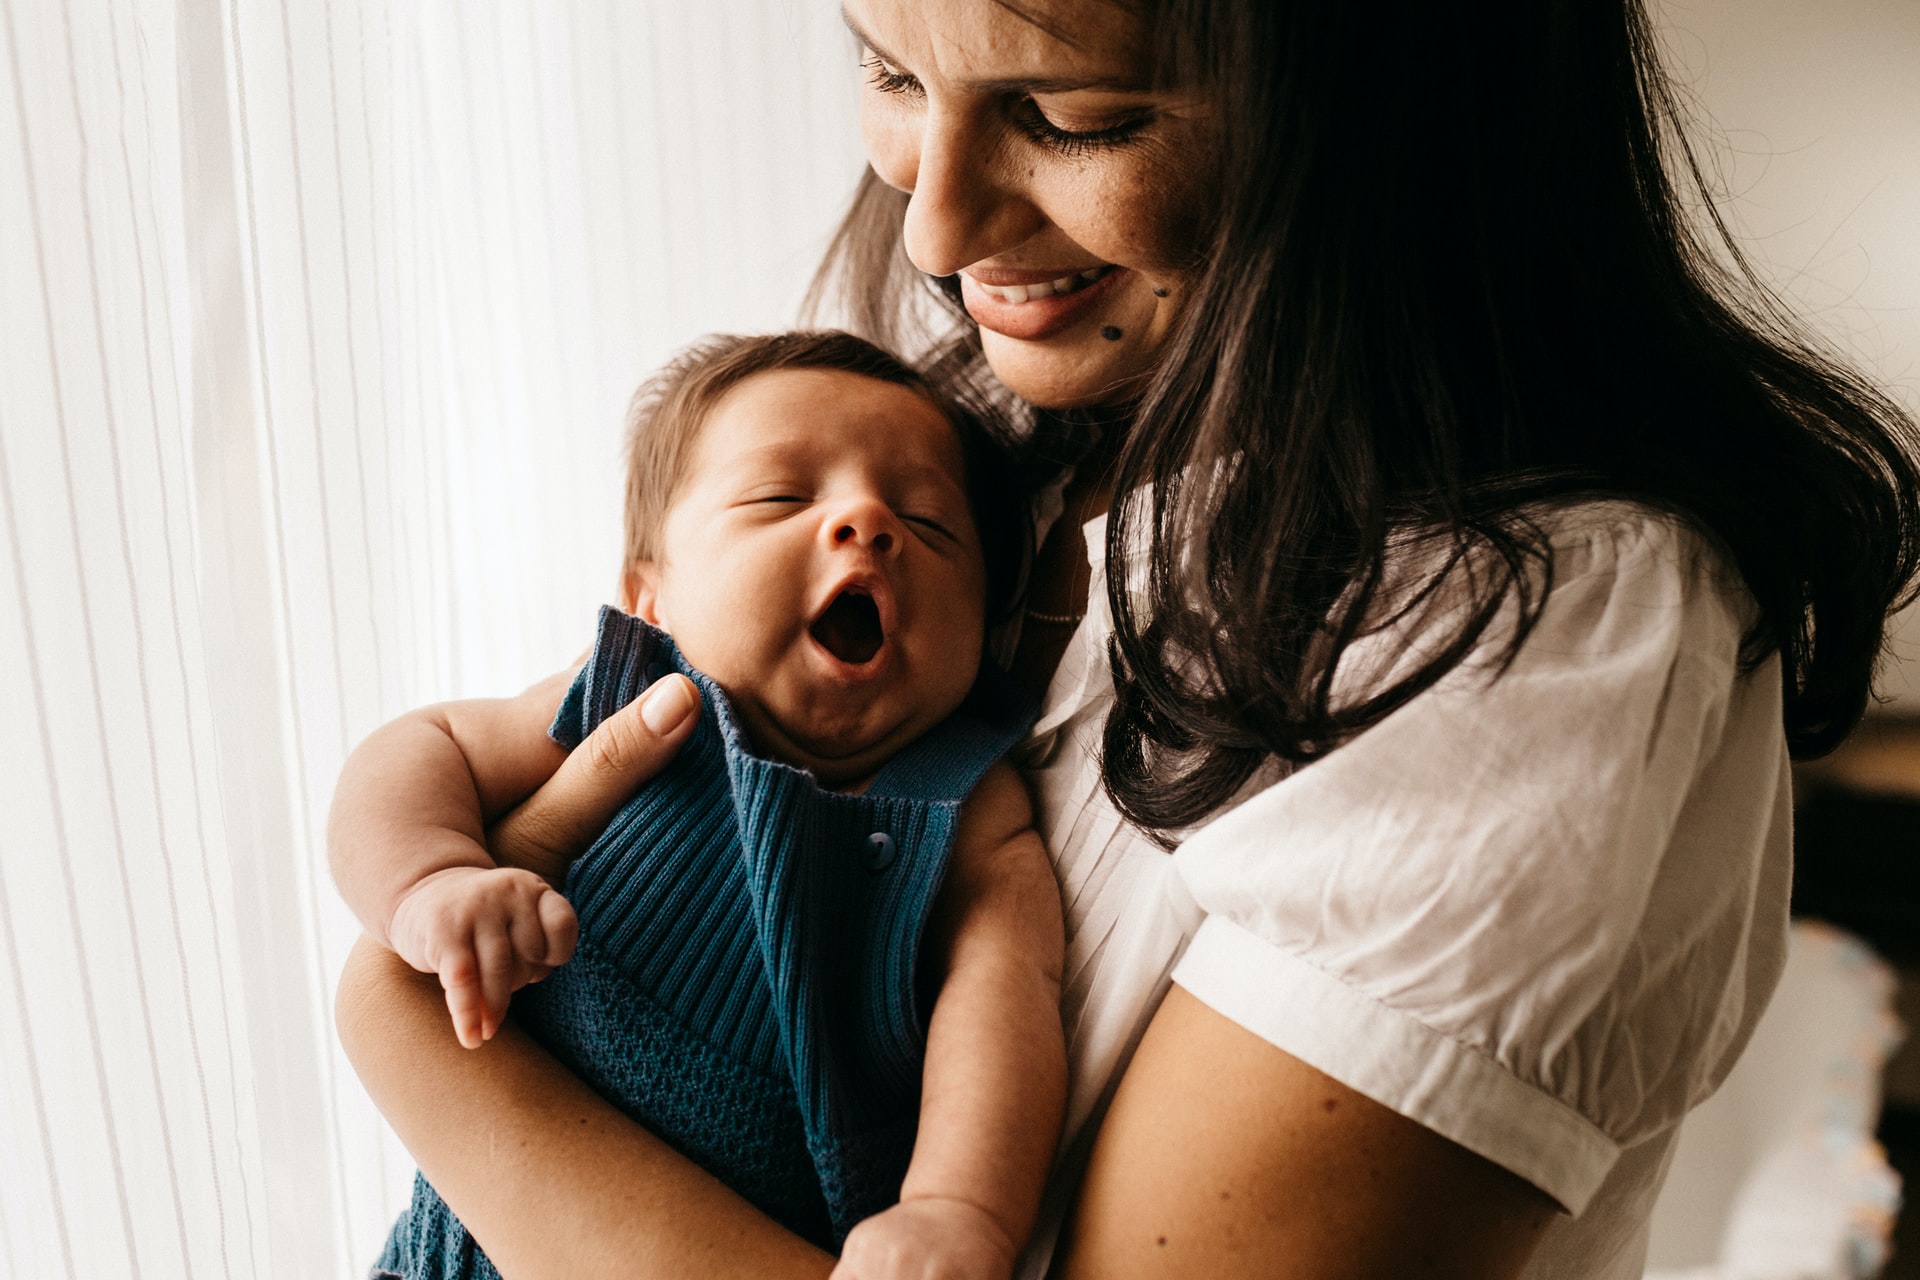 Ćwiczenia po porodzie – kiedy można zacząć trening i jaki zestaw wybrać?